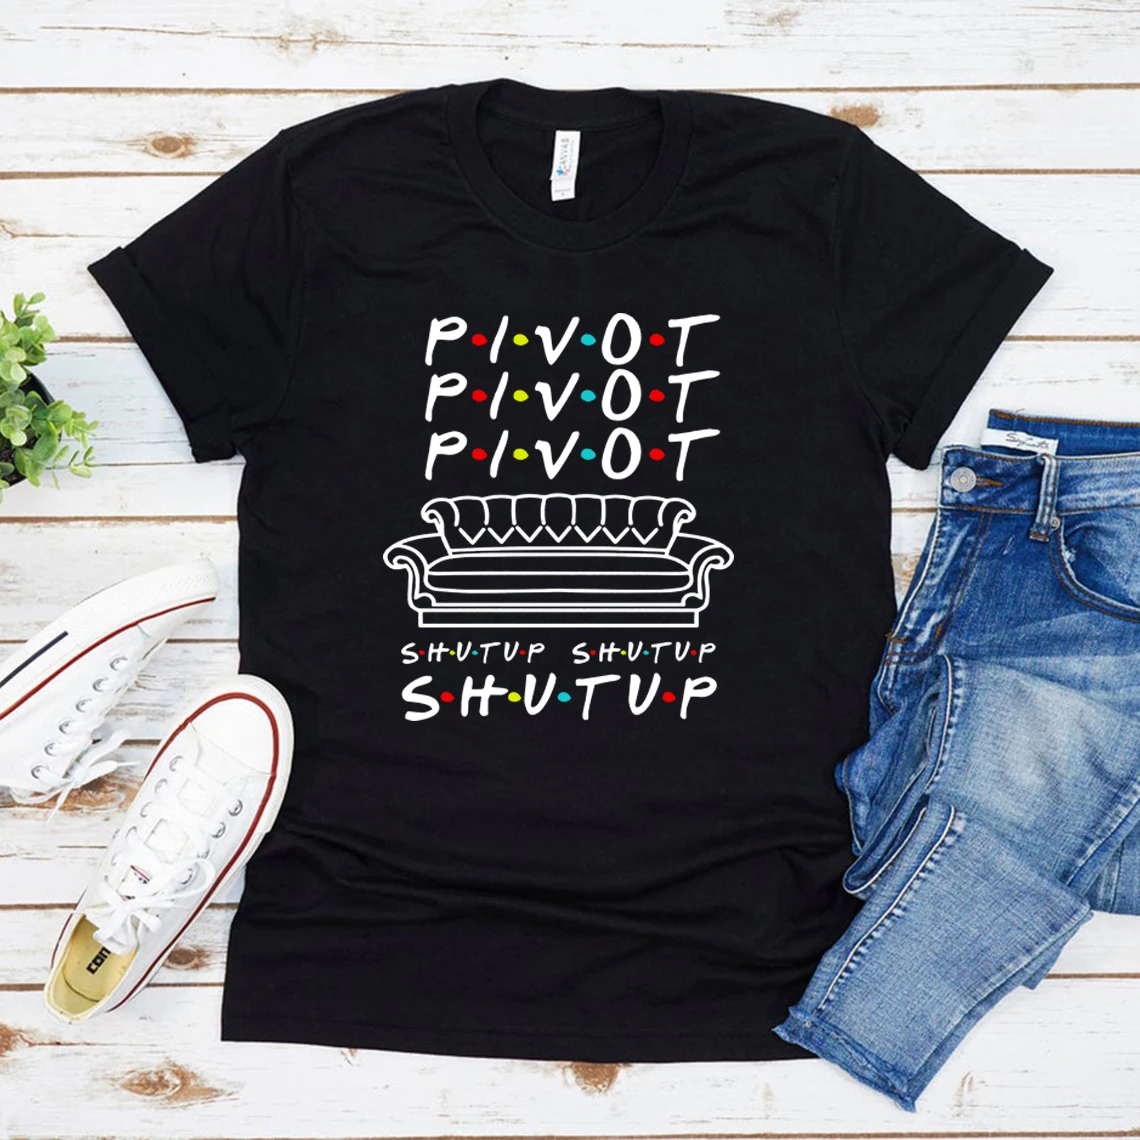 Camiseta Feminina Pivot Friends TV Show, Shut